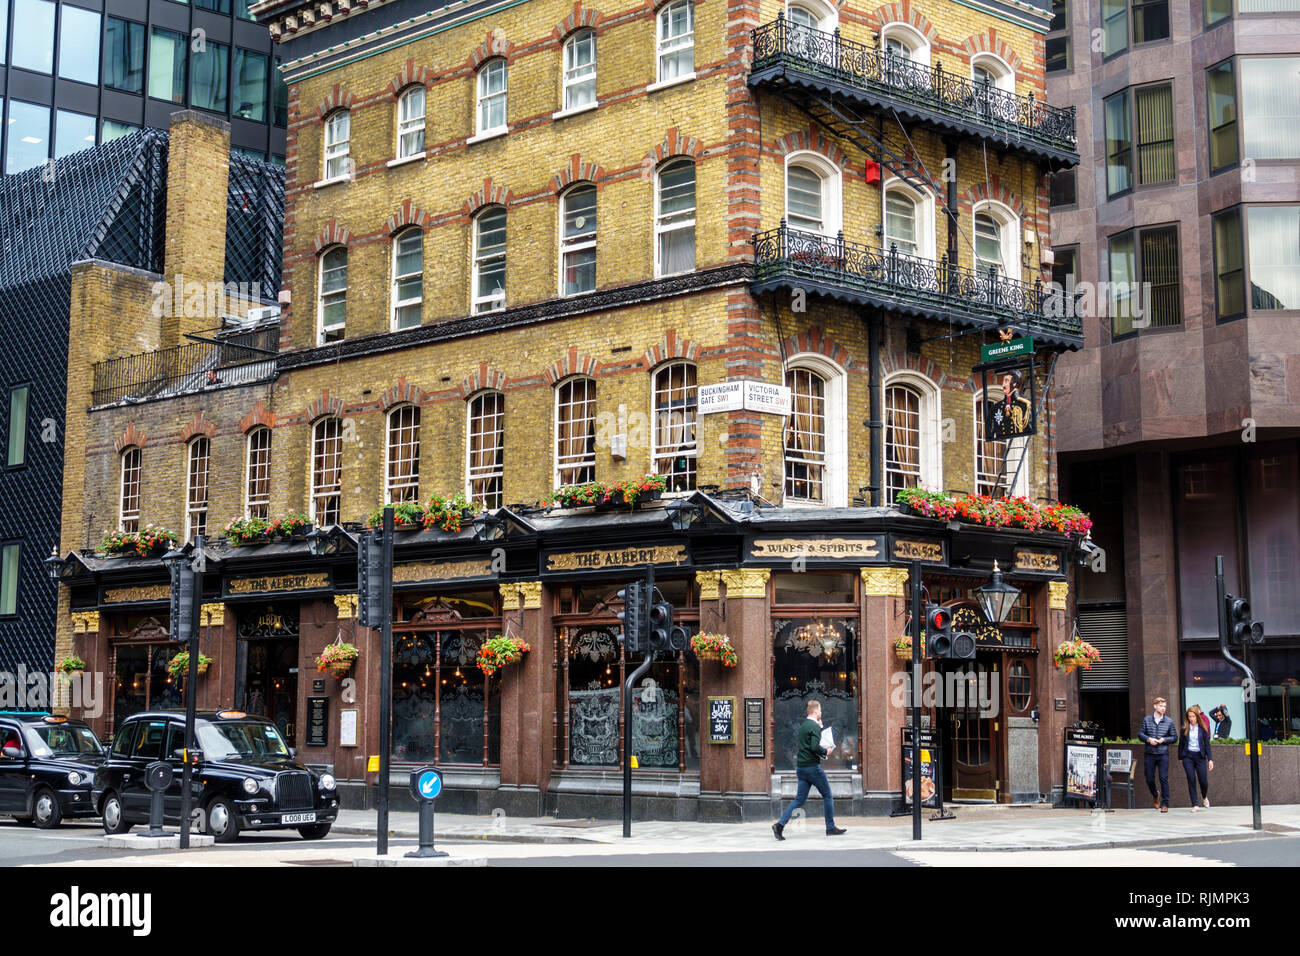 Vereinigtes Königreich Großbritannien England London Westminster The Albert Pub Viktorianisches öffentliches Haus Gebäude außen Ziegelgebäude schwarz taxicab ta Stockfoto